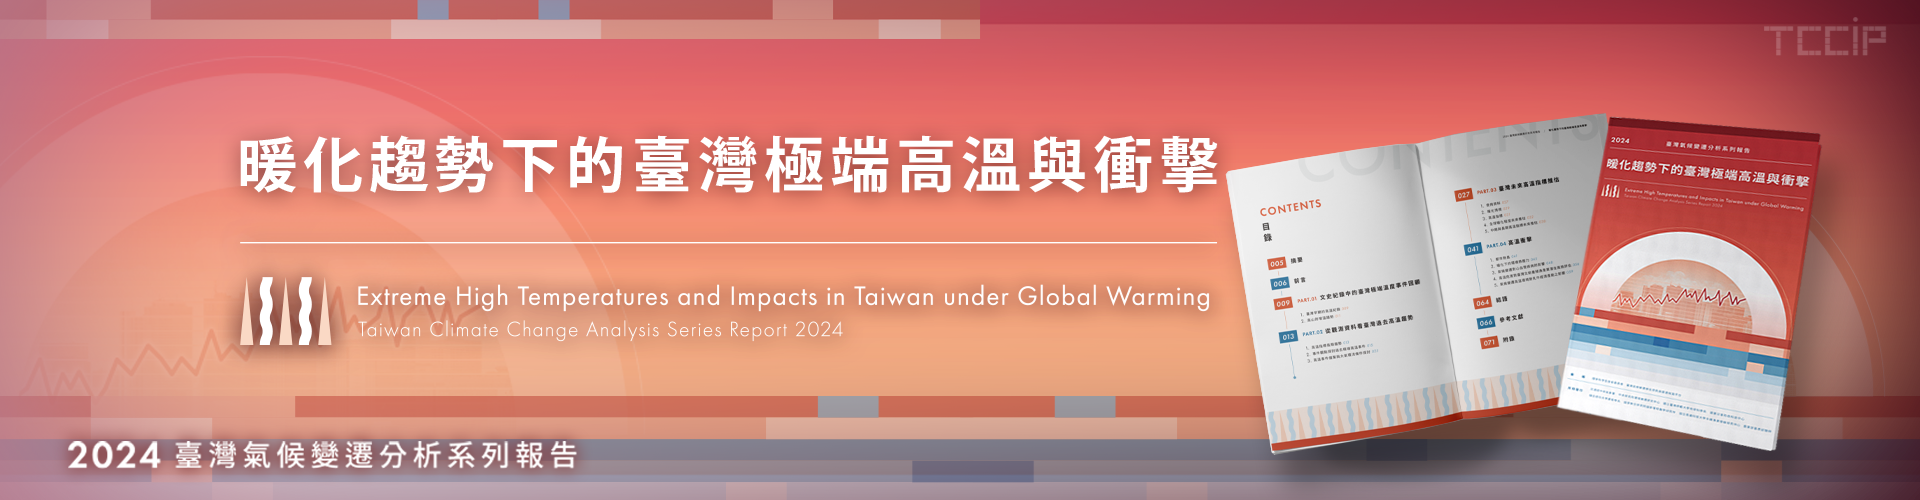 電子書上架囉~~『2024臺灣氣候變遷分析系列報告: 暖化趨勢下的臺灣極端高溫與衝擊』